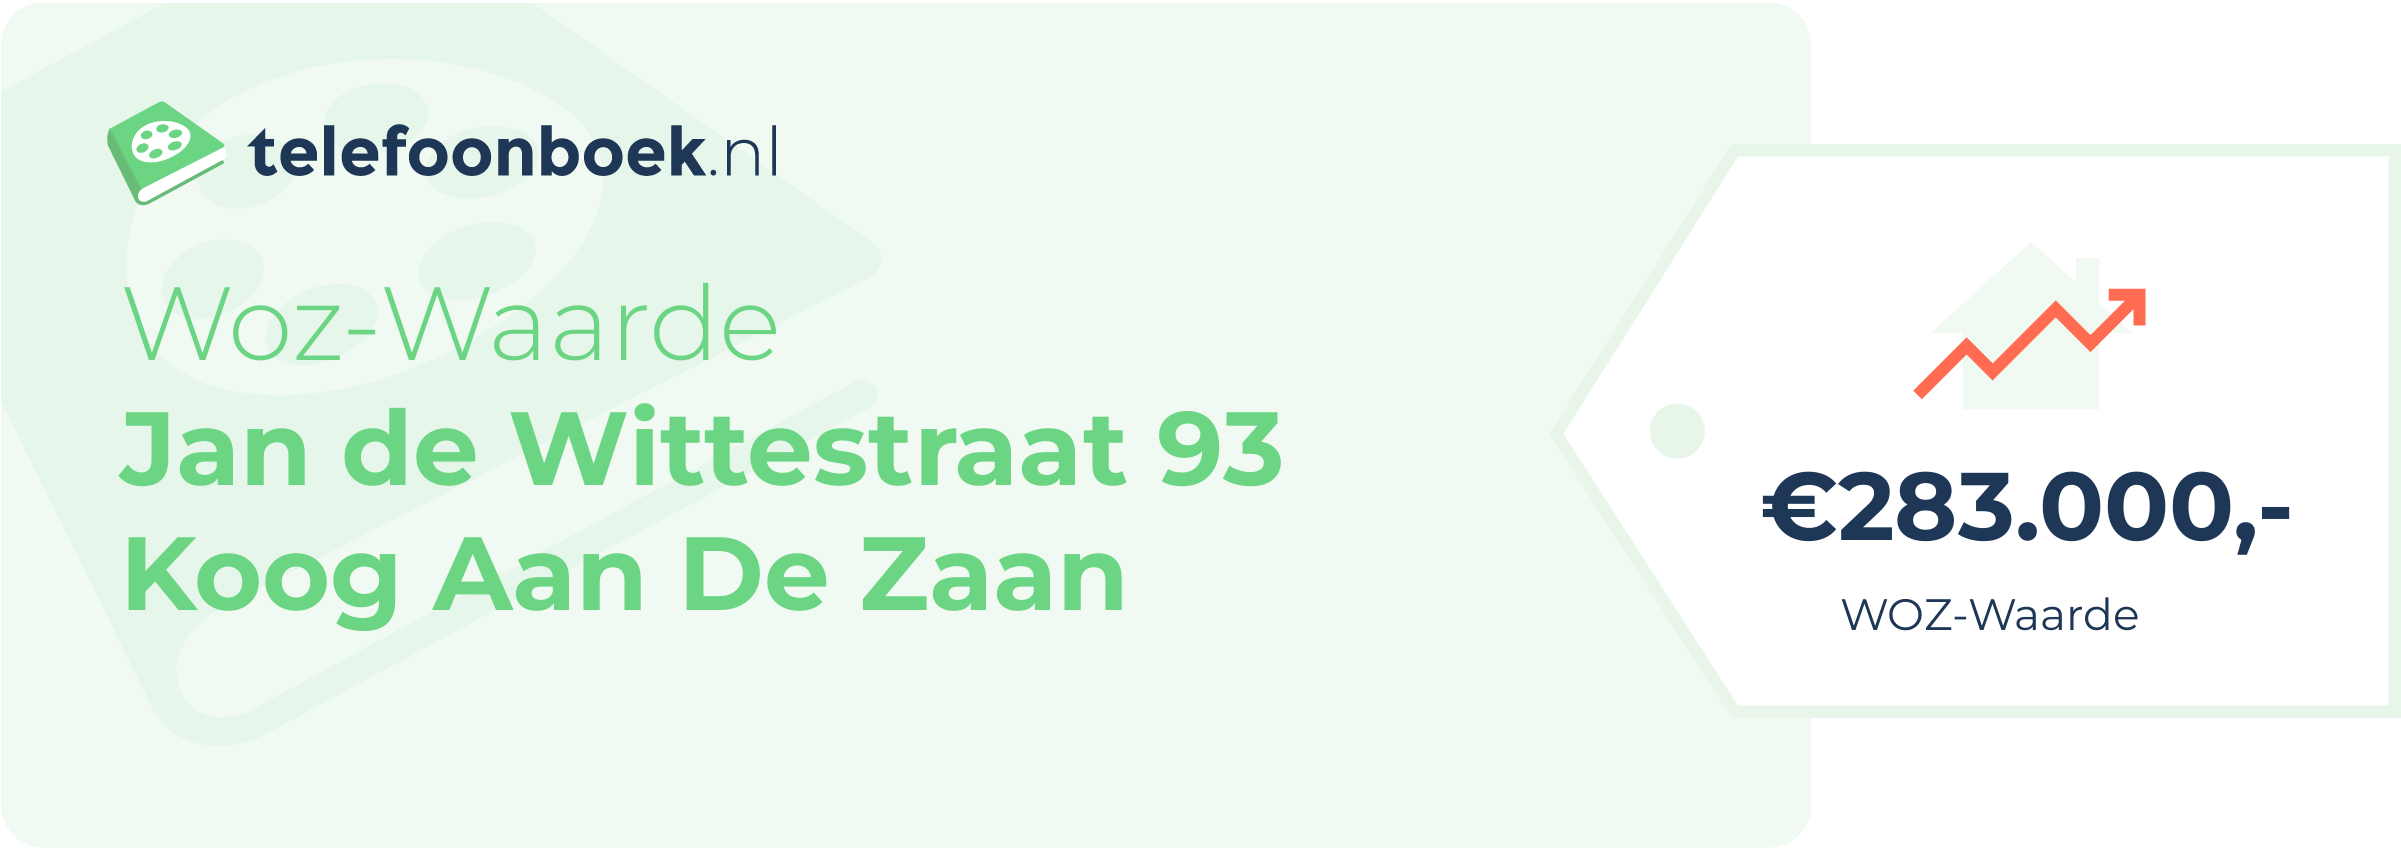 WOZ-waarde Jan De Wittestraat 93 Koog Aan De Zaan